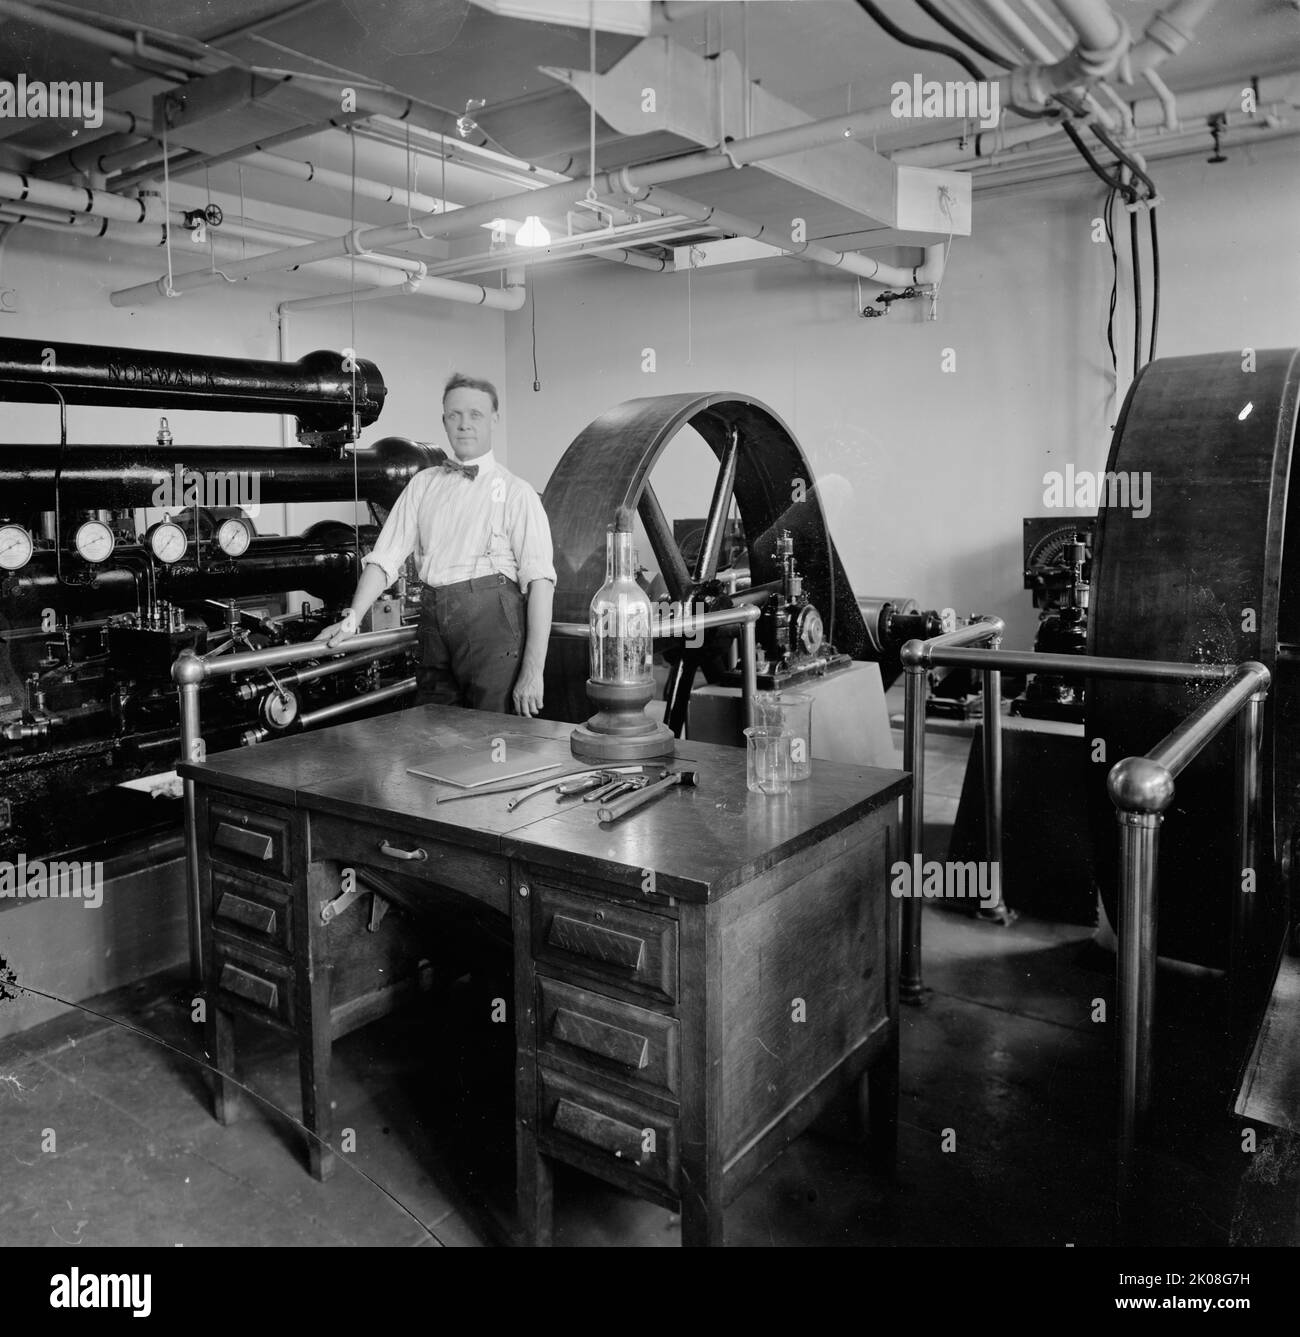 Bureau des mines, laboratoires à basse température, entre 1905 et 1945. Le Bureau des mines des États-Unis (USBM) était la principale agence gouvernementale américaine chargée de la recherche scientifique et de la diffusion d'informations sur l'extraction, le traitement, l'utilisation et la conservation des ressources minérales. Banque D'Images